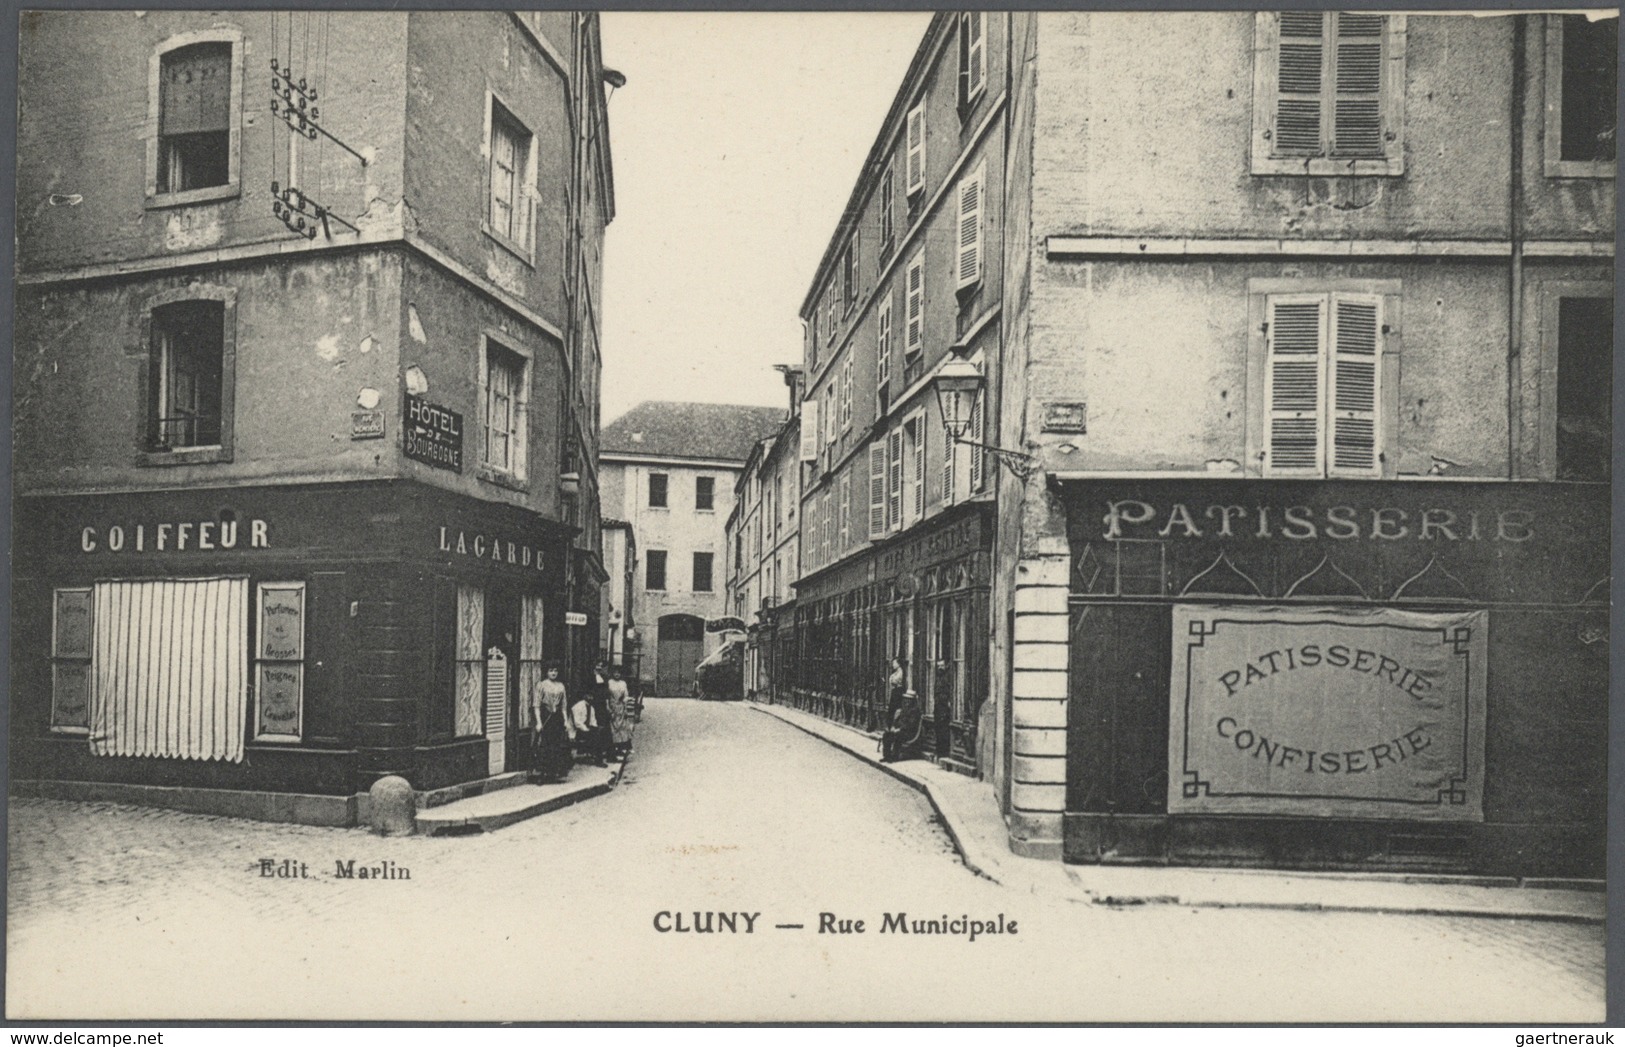 Frankreich - Besonderheiten: 1898/1930, FRANCE, immense stock of around 51500 historical picture pos